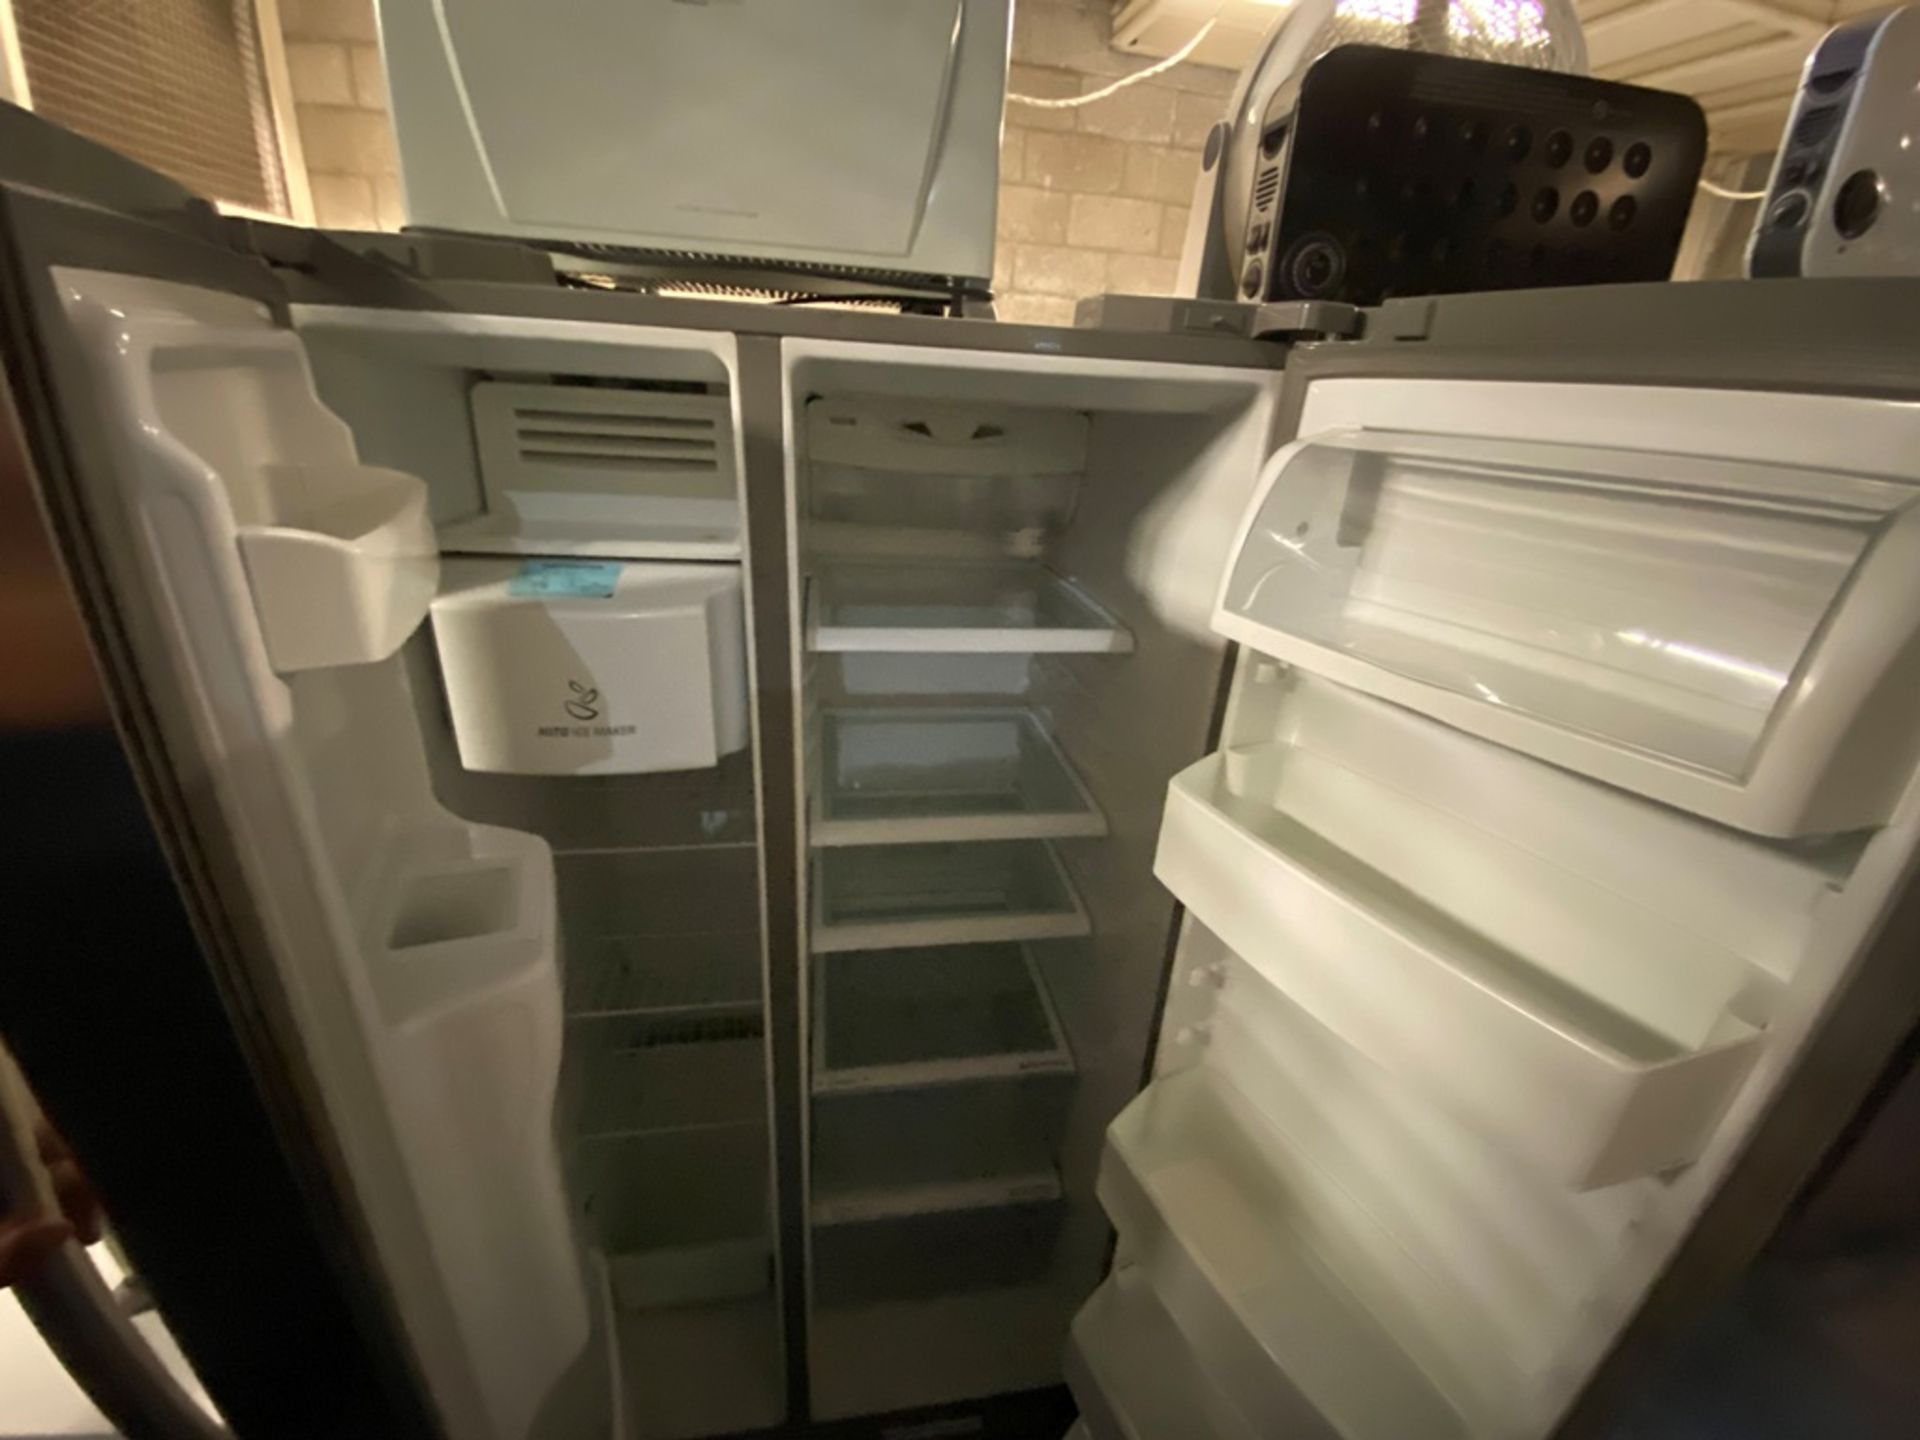 Refrigerador marca LG modelo GML278DS Serie 404MRSS08030 color gris, detalles estéticos, favor de i - Image 8 of 9